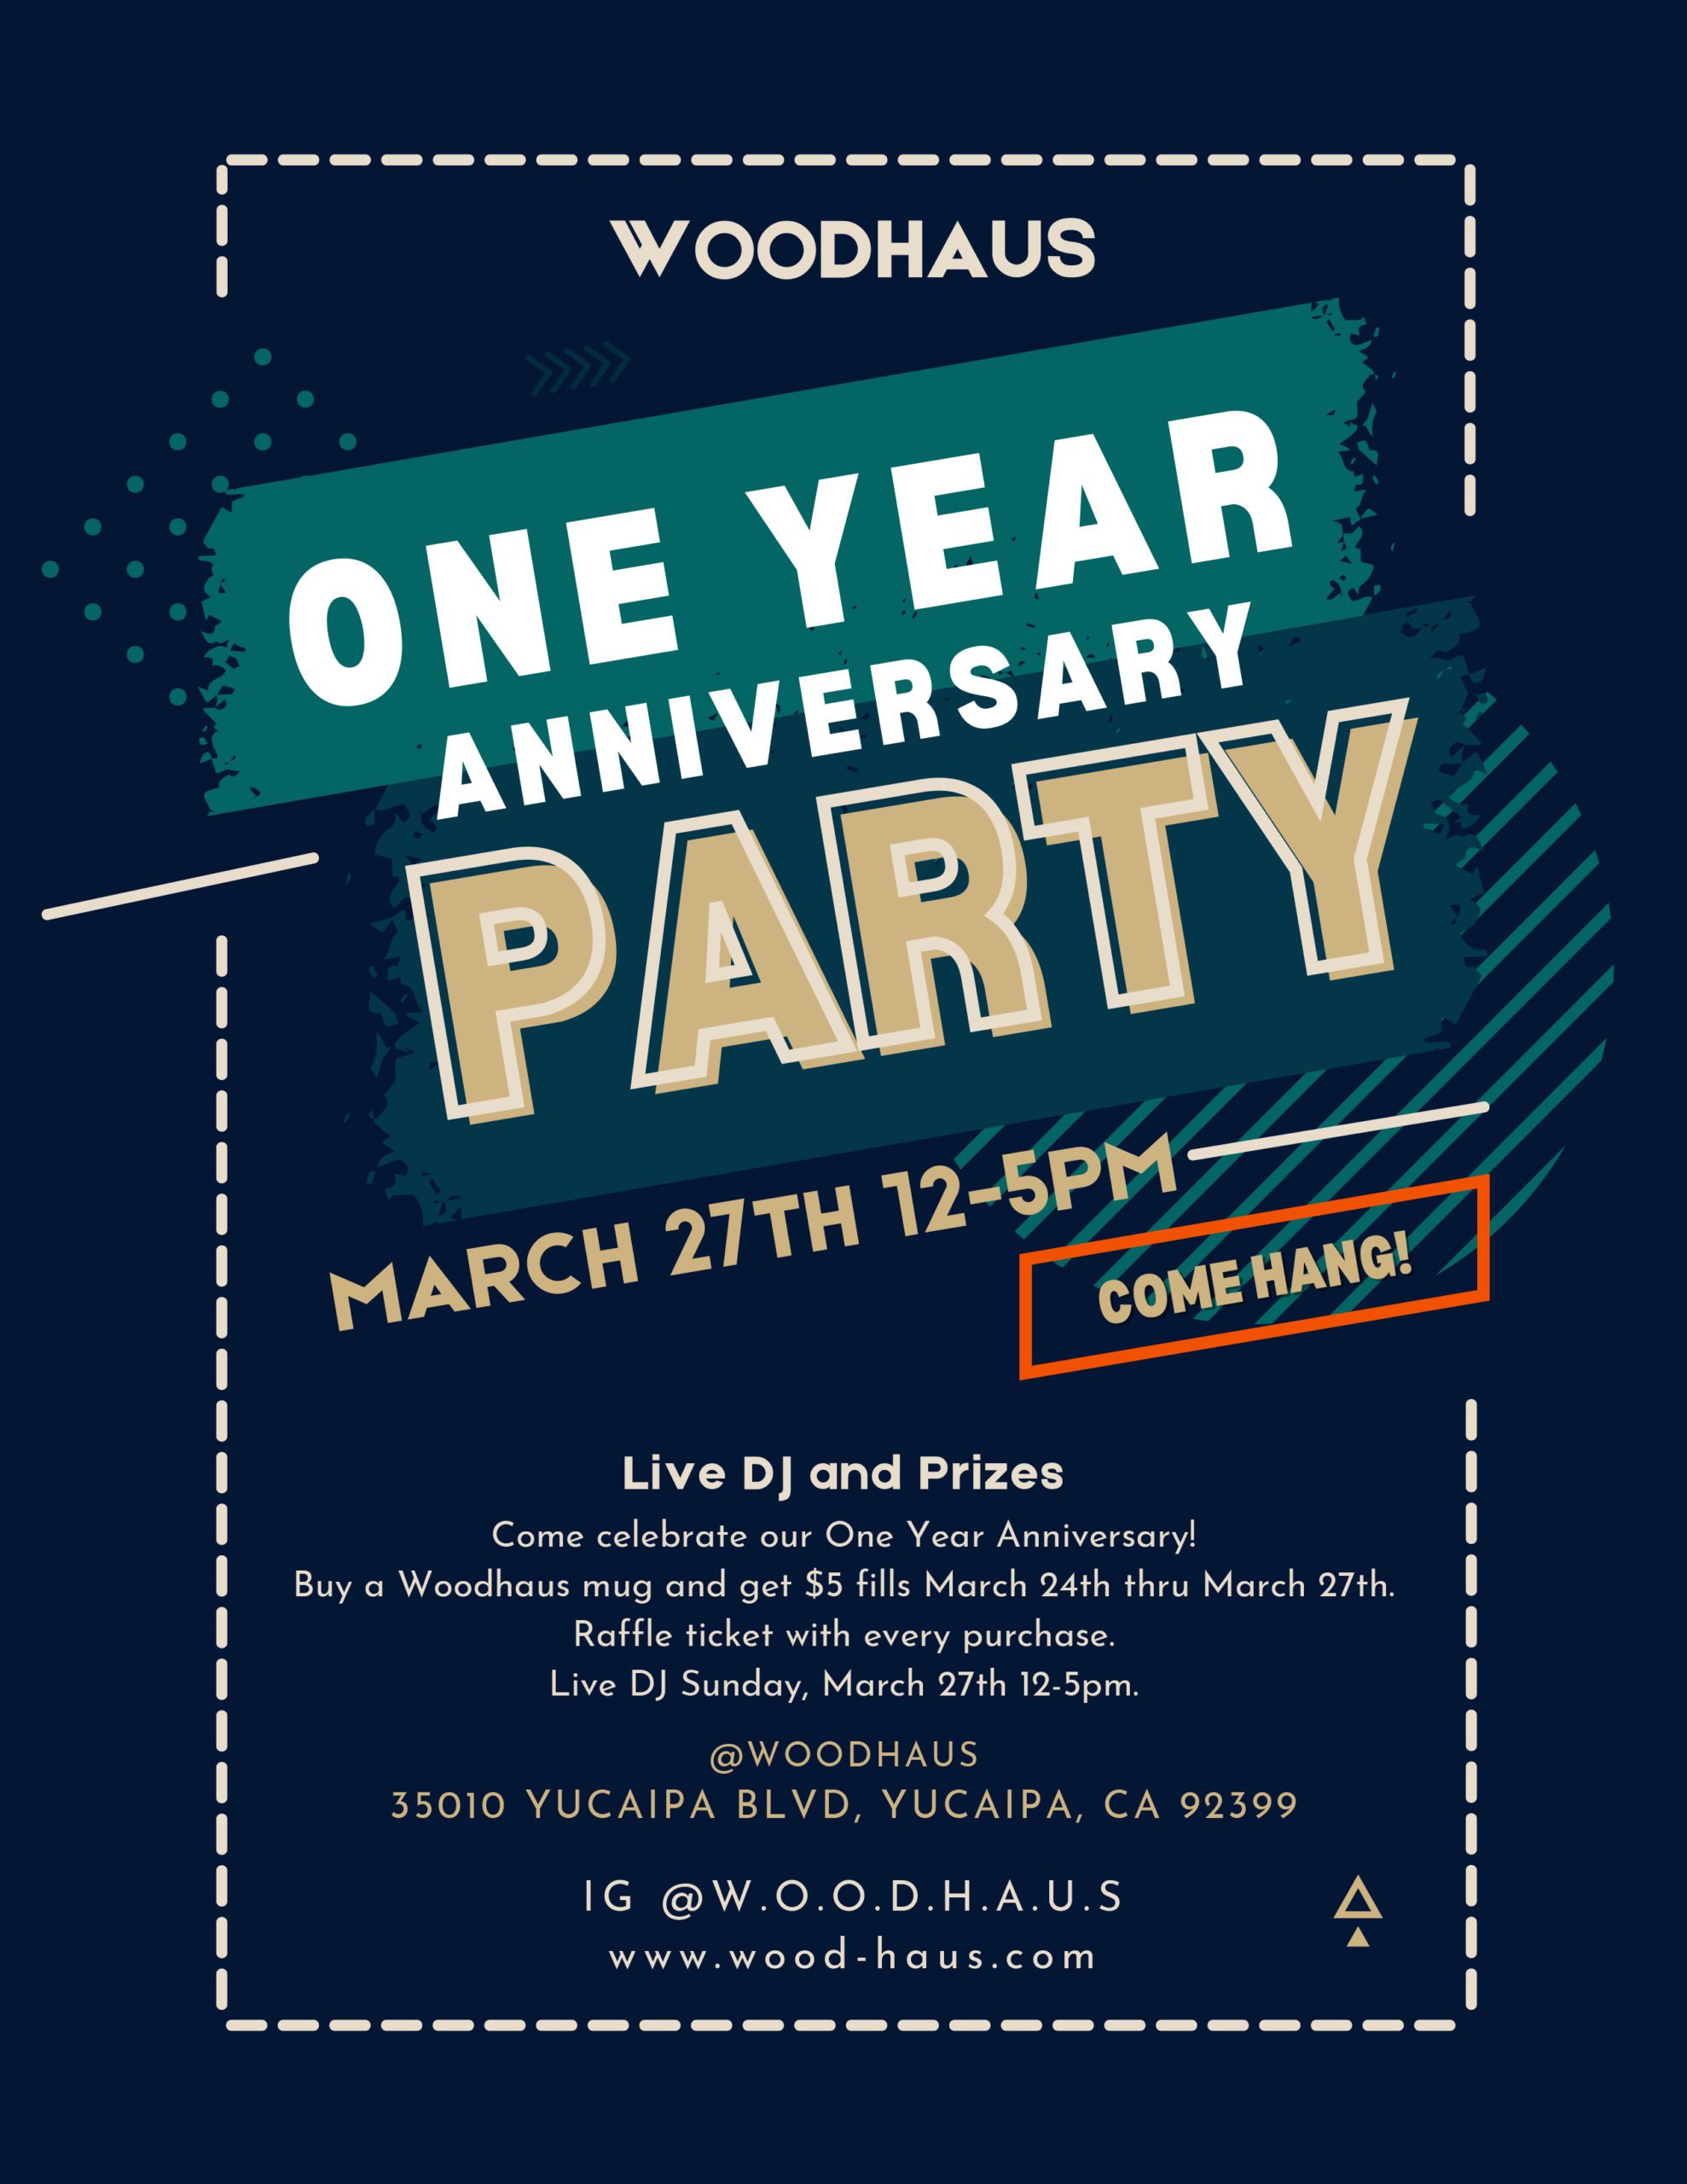 Woodhaus One Year Anniversary Party